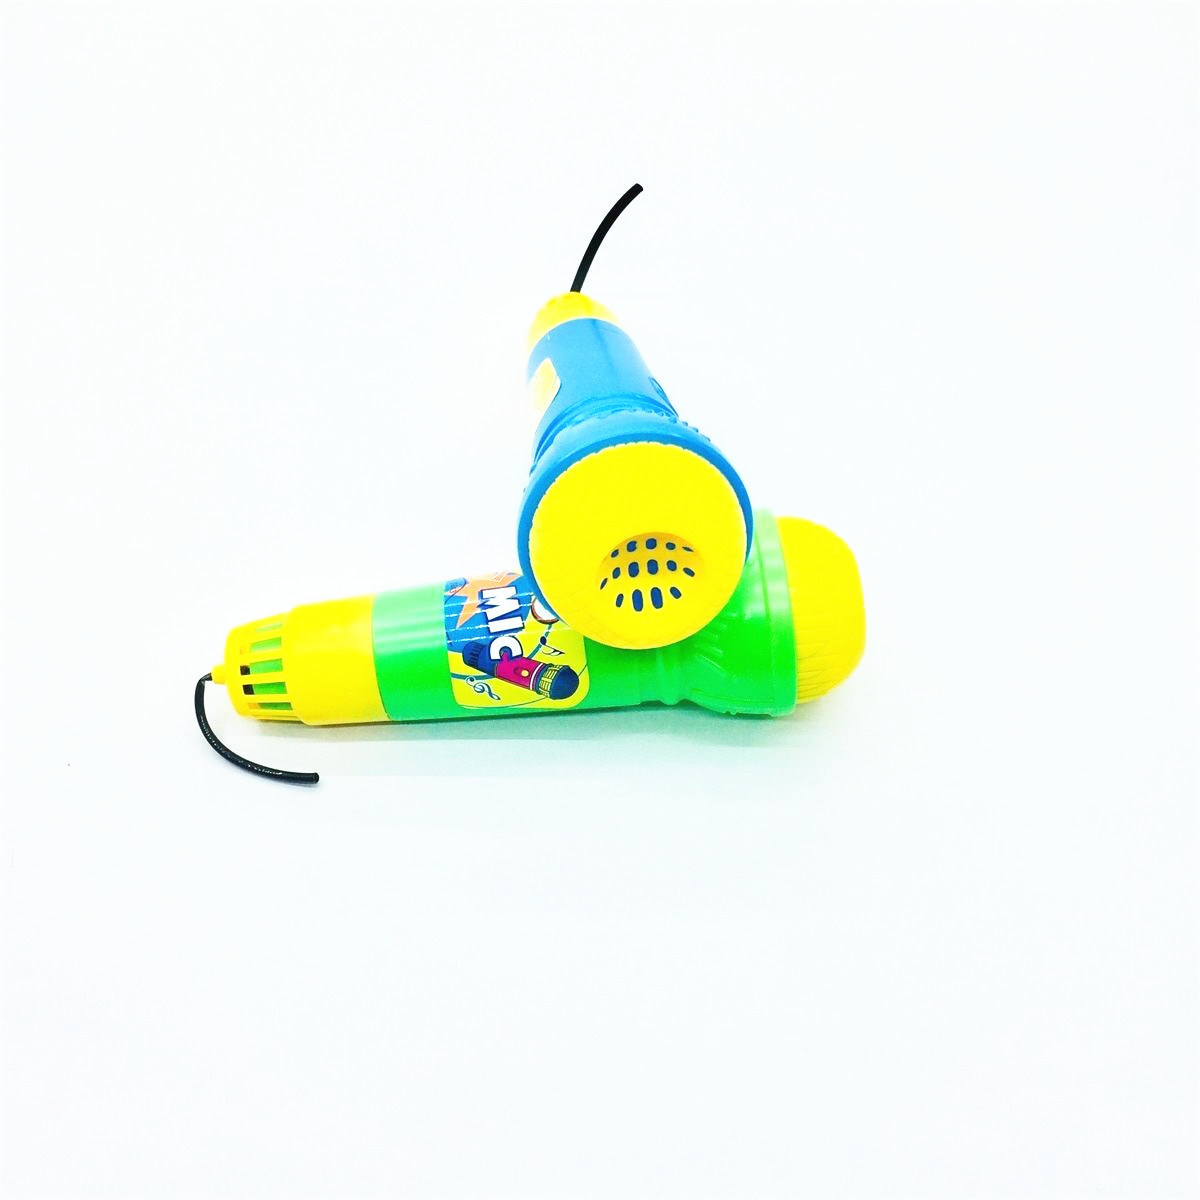 厂家直销回音小麦克风 趣味话筒 麦克风玩具 儿童益智互动玩具详情图5